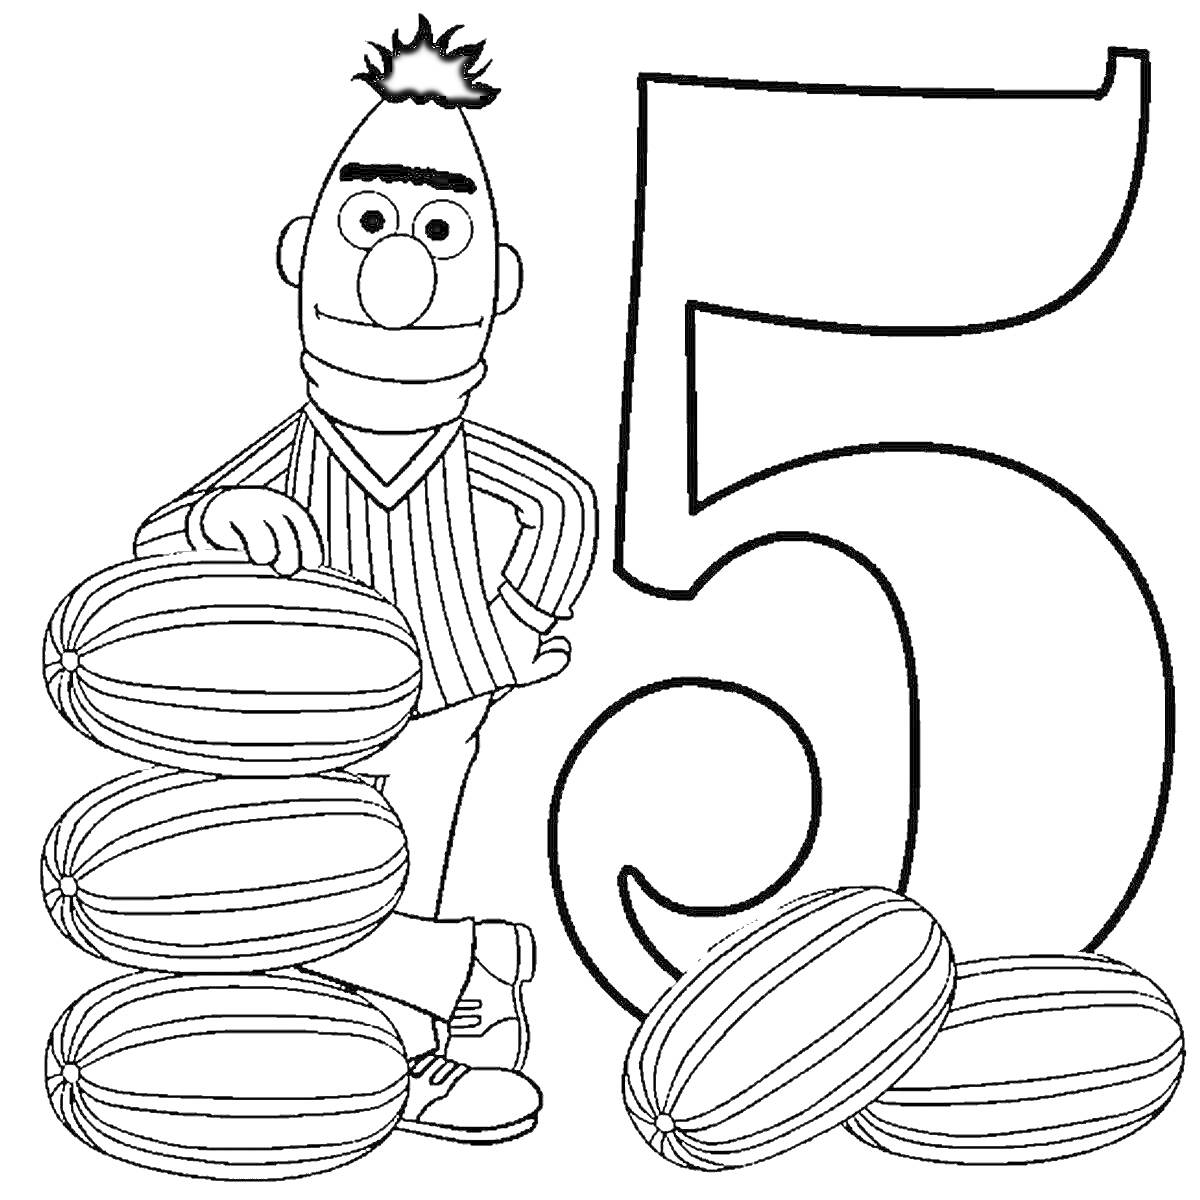 Раскраска Персонаж стоит рядом с цифрой 5 и тремя спортивными мячами.